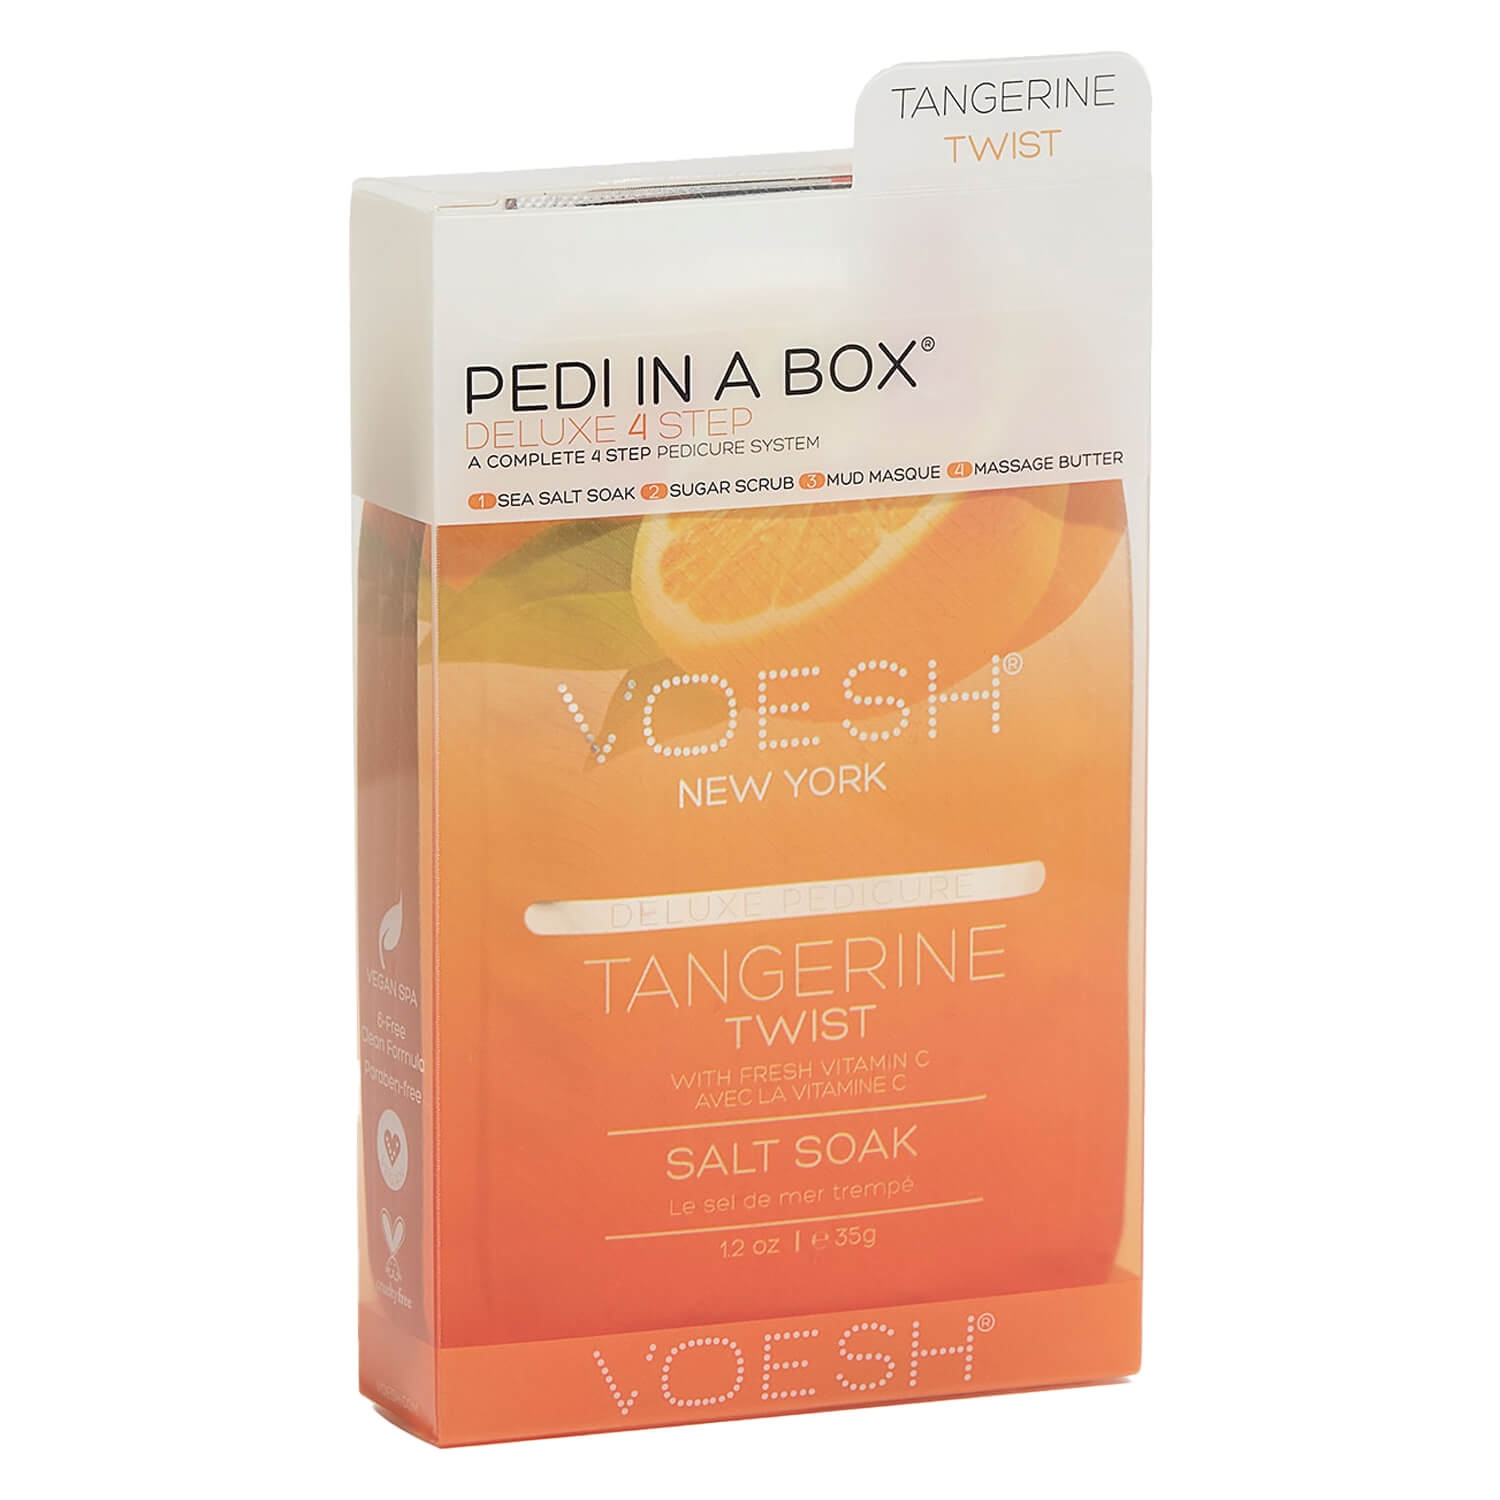 Produktbild von VOESH New York - Pedi In A Box 4 Step Tangerine Twist